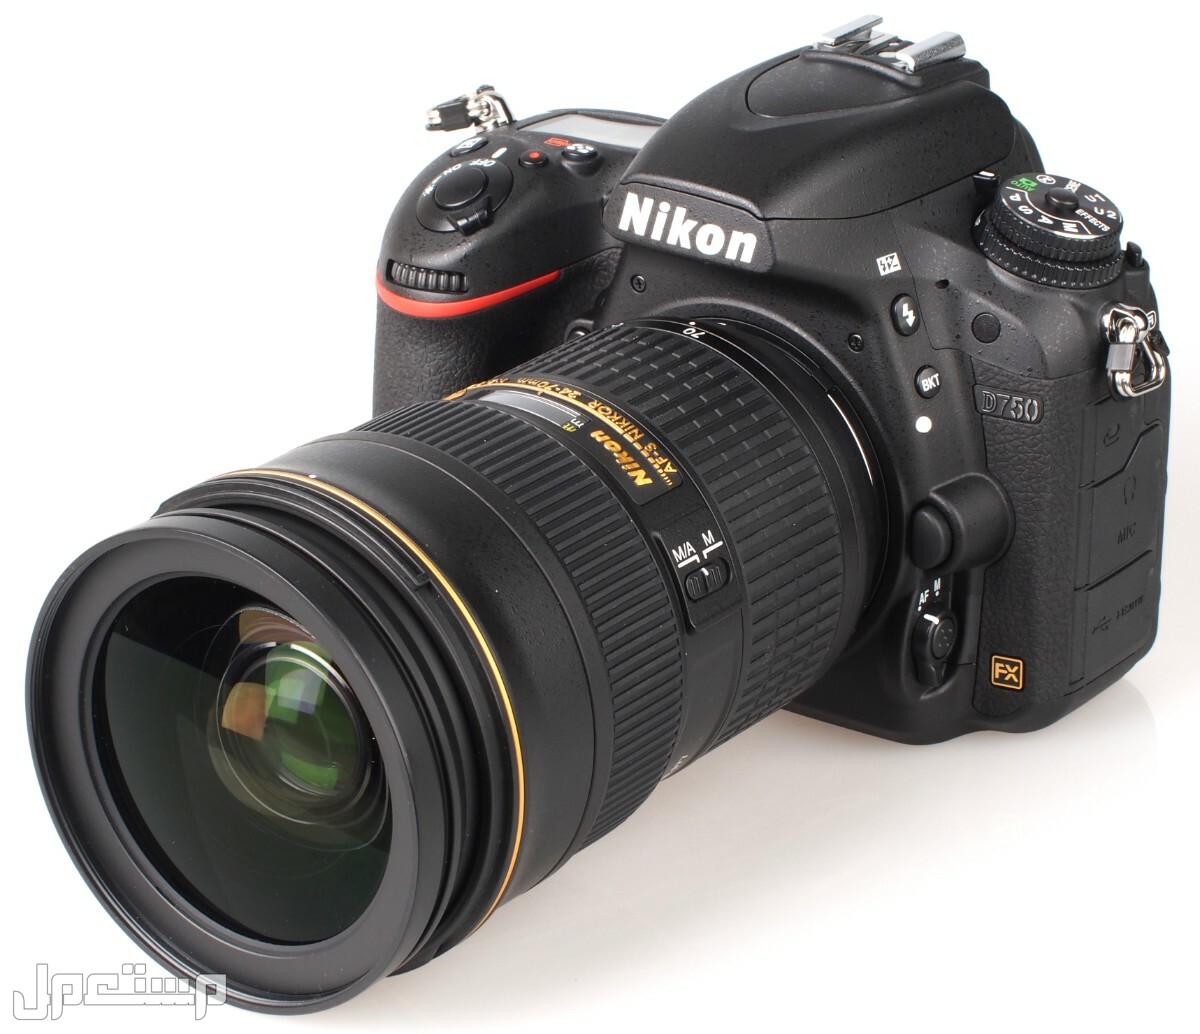 مواصفات ومميزات وأسعار أفضل أنواع كاميرات نيكون للمحترفين في تونس كاميرا Nikon D750